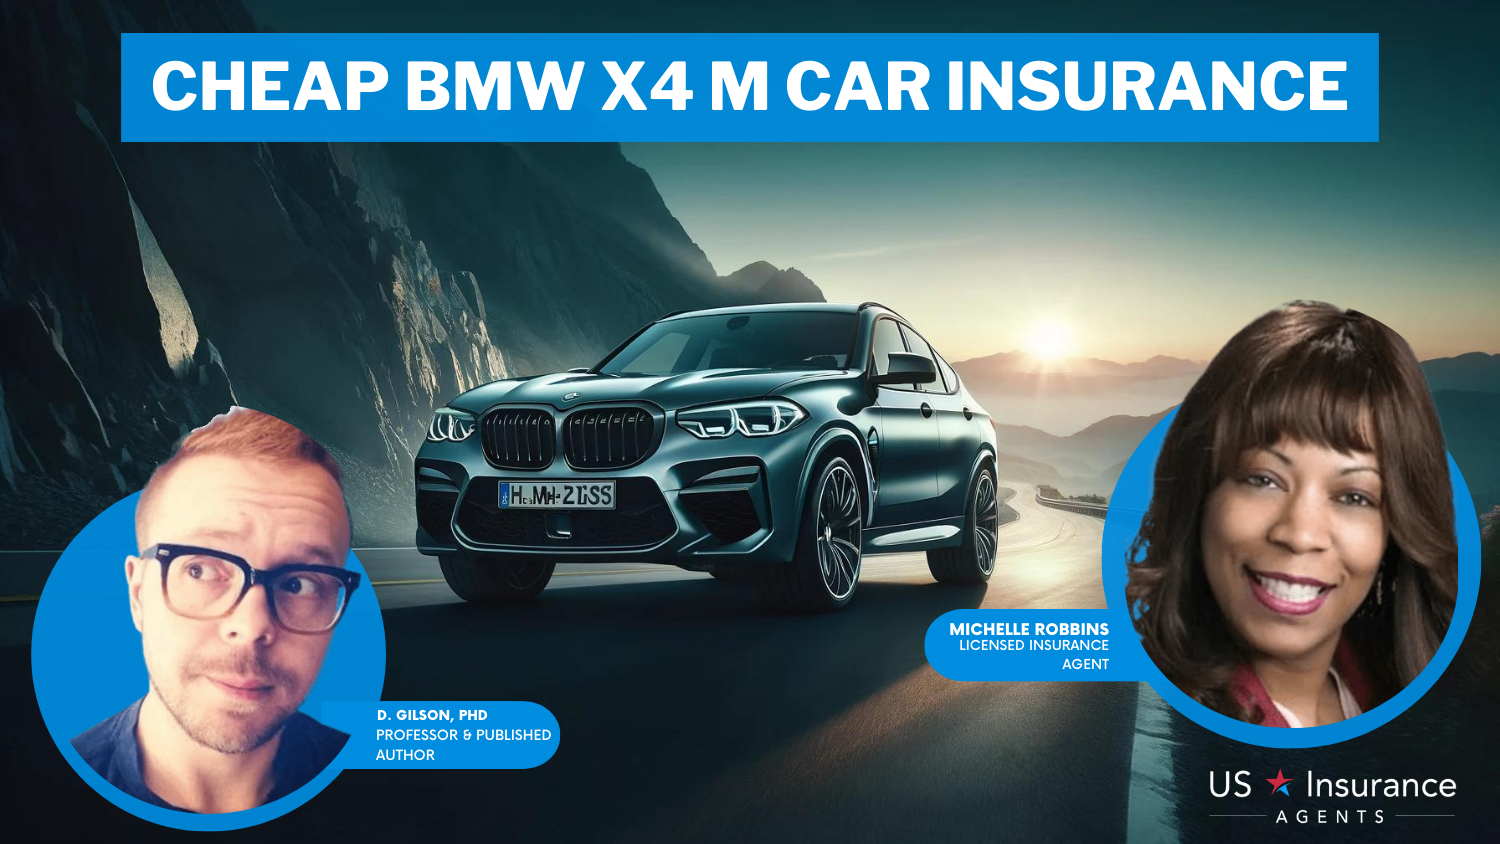 Chubb, Nationwide, AAA: Cheap BMW X4 M Car Insurance